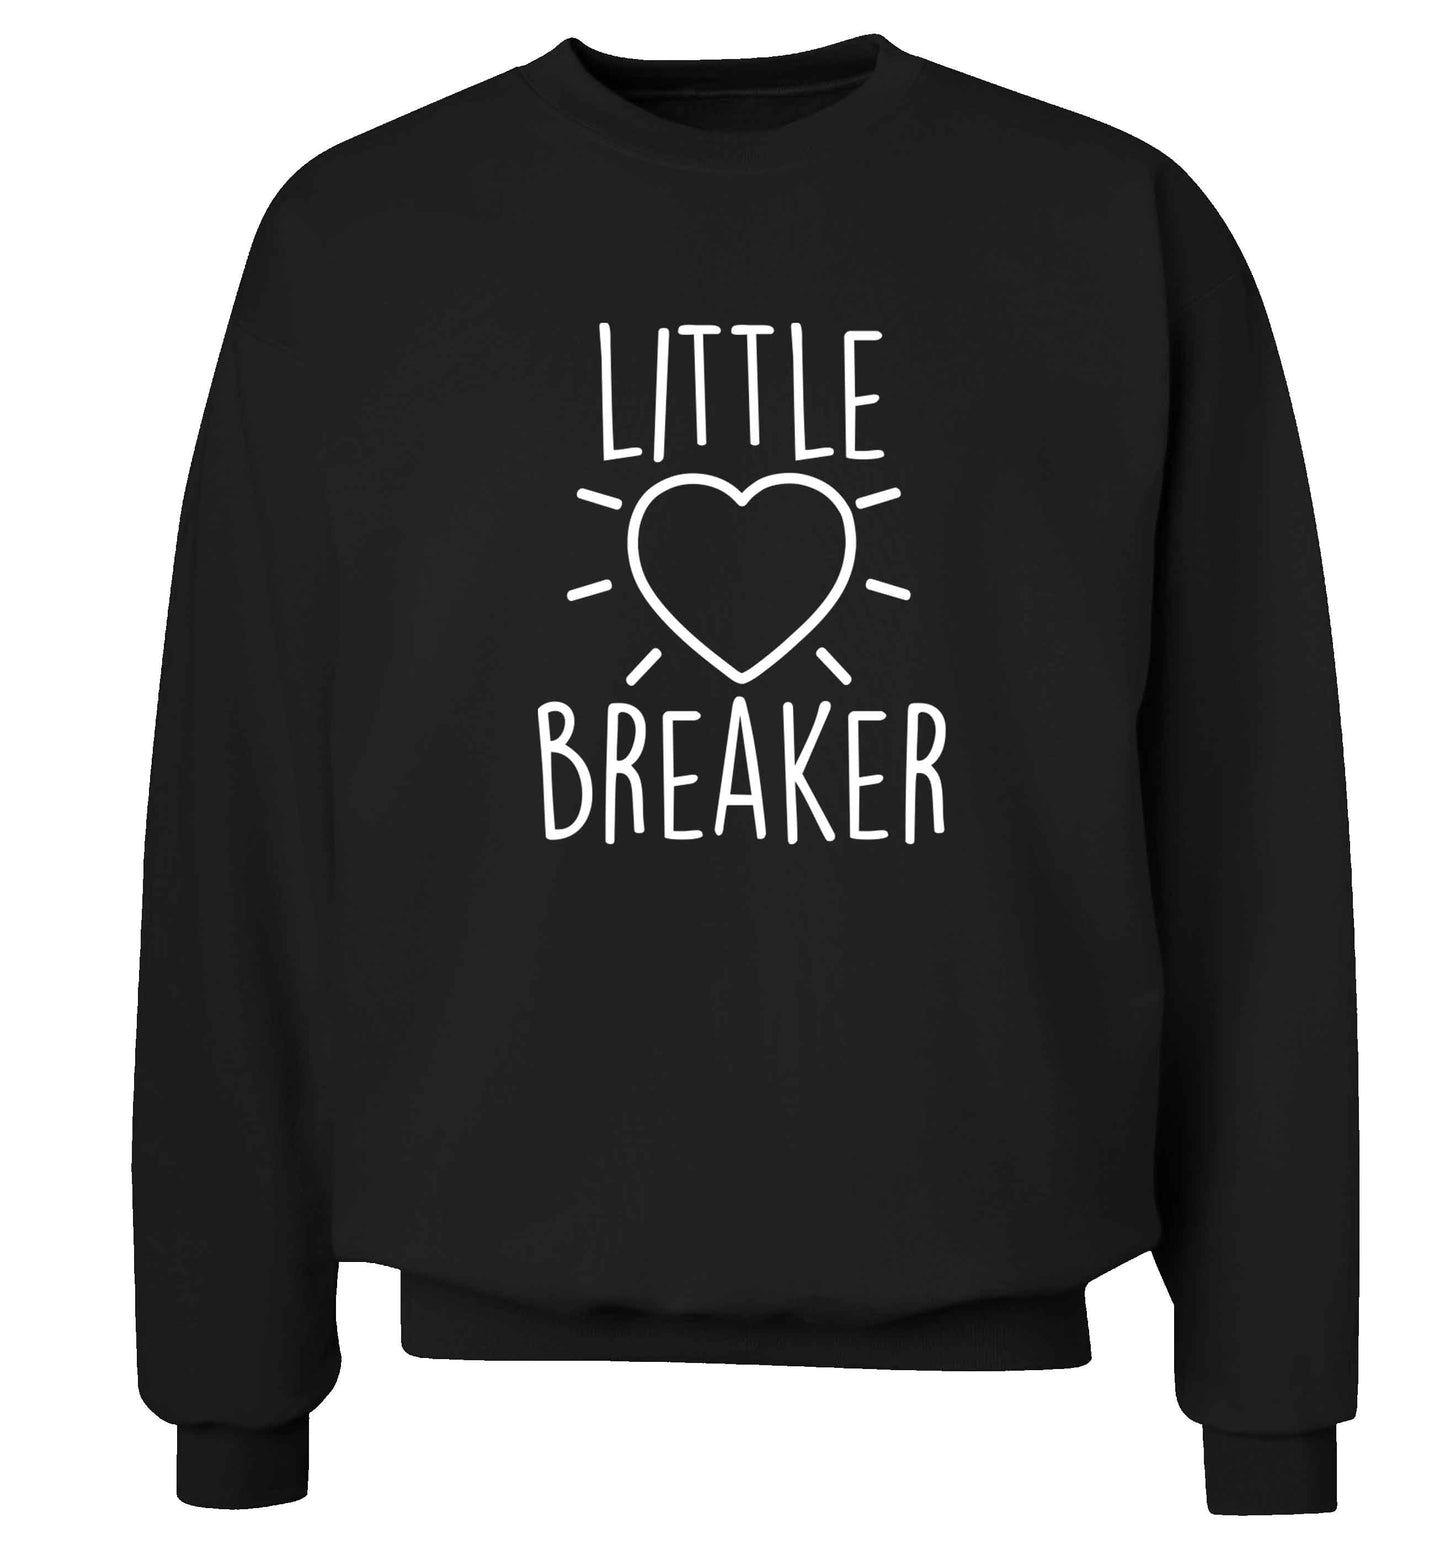 Little heartbreaker adult's unisex black sweater 2XL